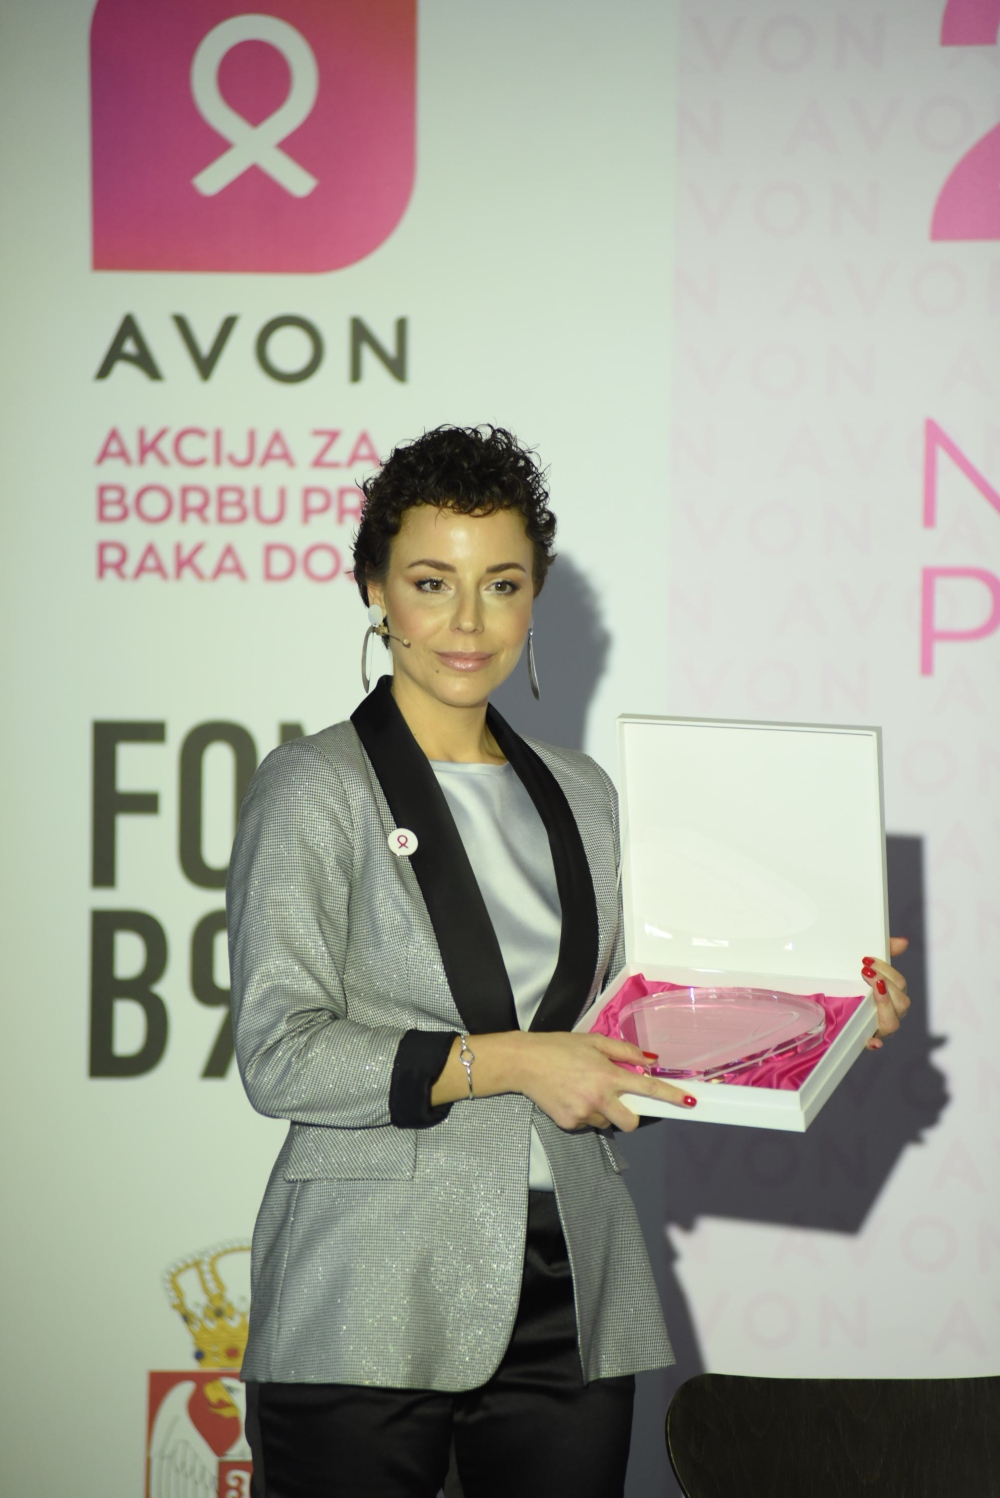 Ana Dornik dobitnica Avon priznanja za zivotno delo 1 Avon i Fond B92 u susret 10. Nacionalnom danu borbe protiv raka dojke